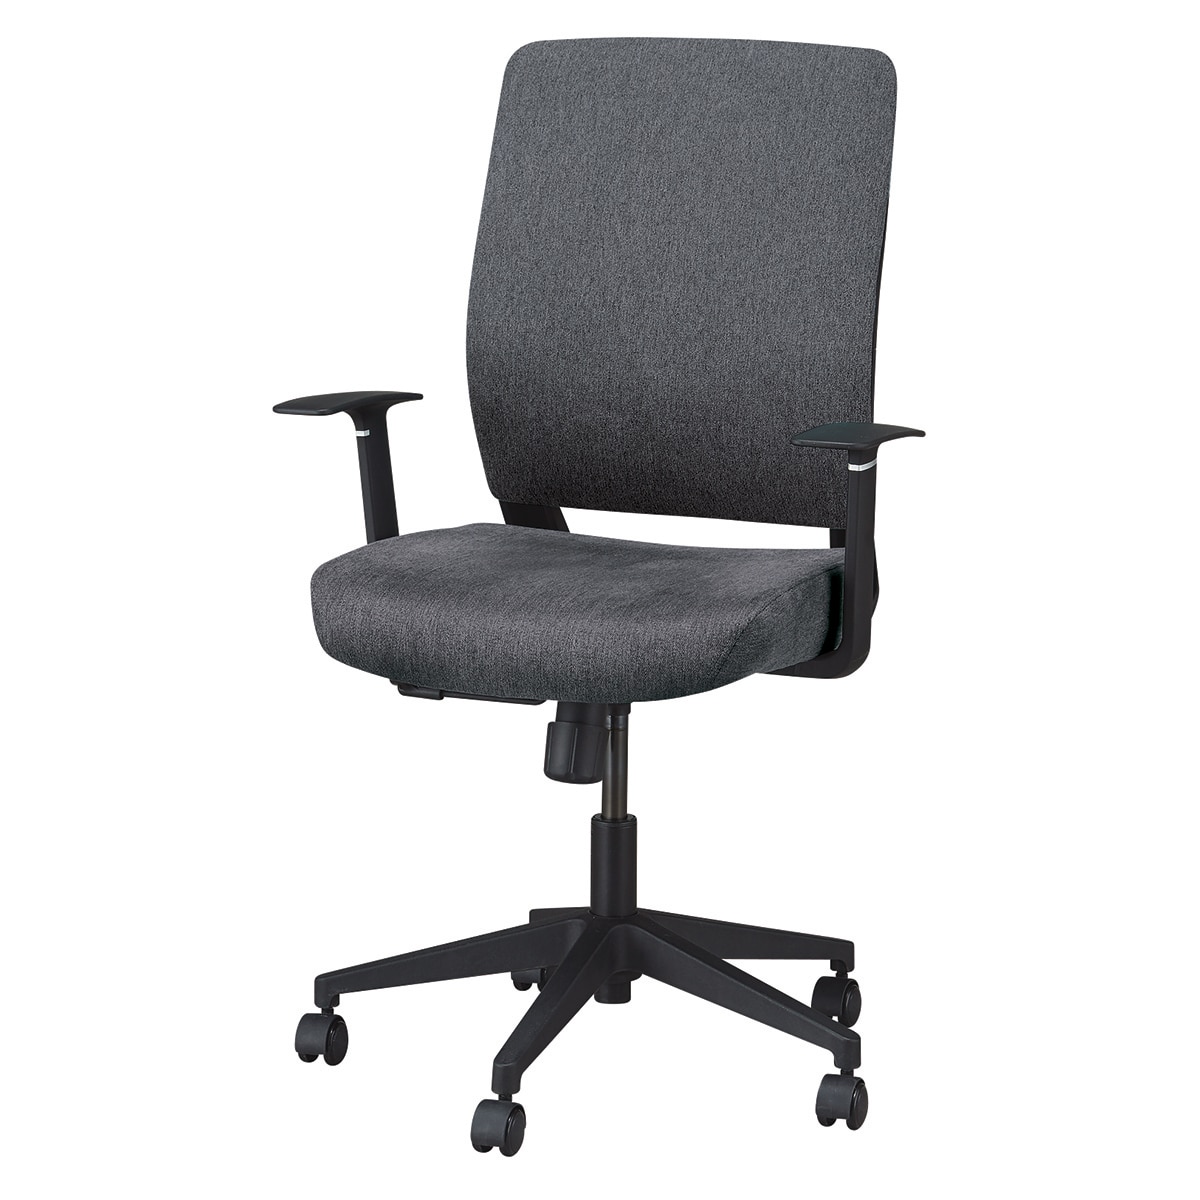 ニトリのオフィスチェア(DCT001B 肘付き GY)   【1年保証】(チェア・椅子)